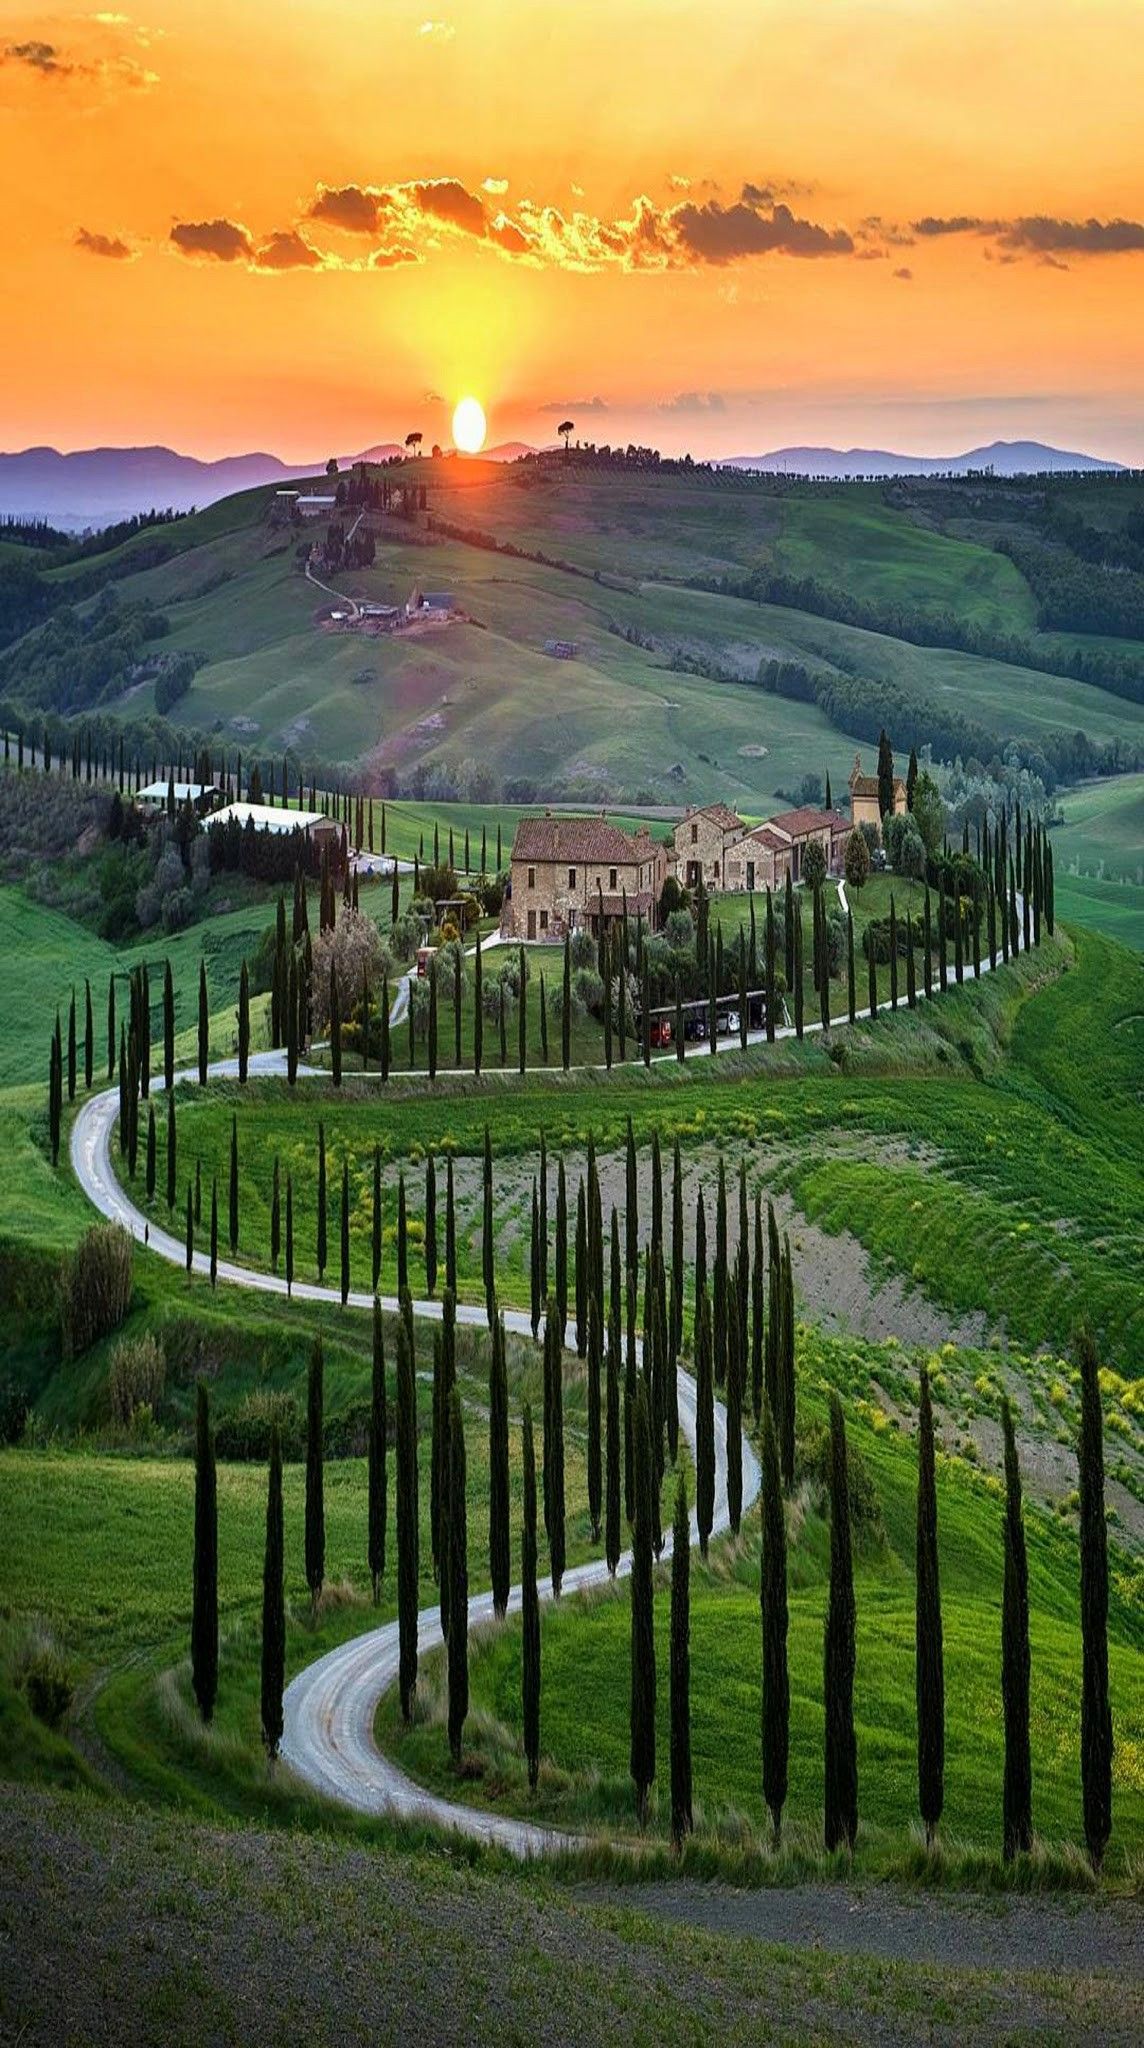 La Toscana